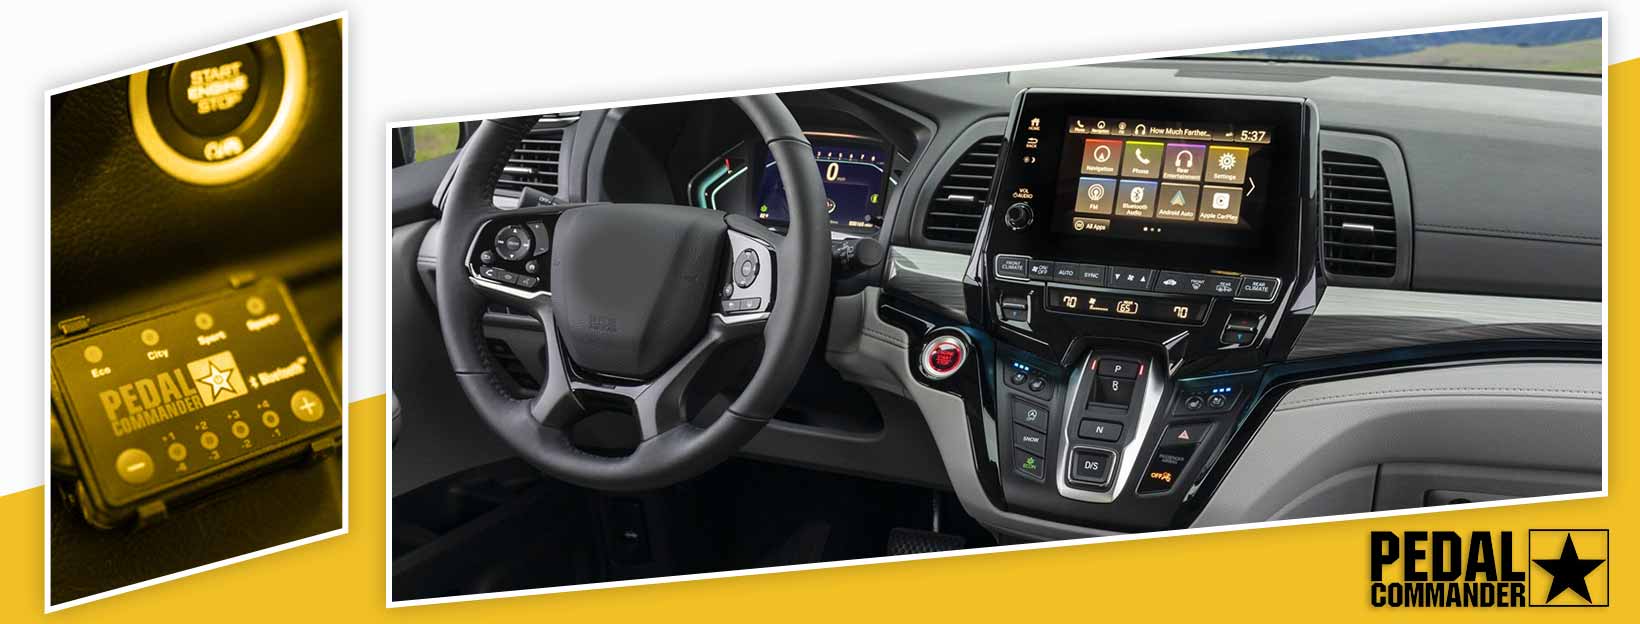 Pedal Commander for Honda Odyssey - interior